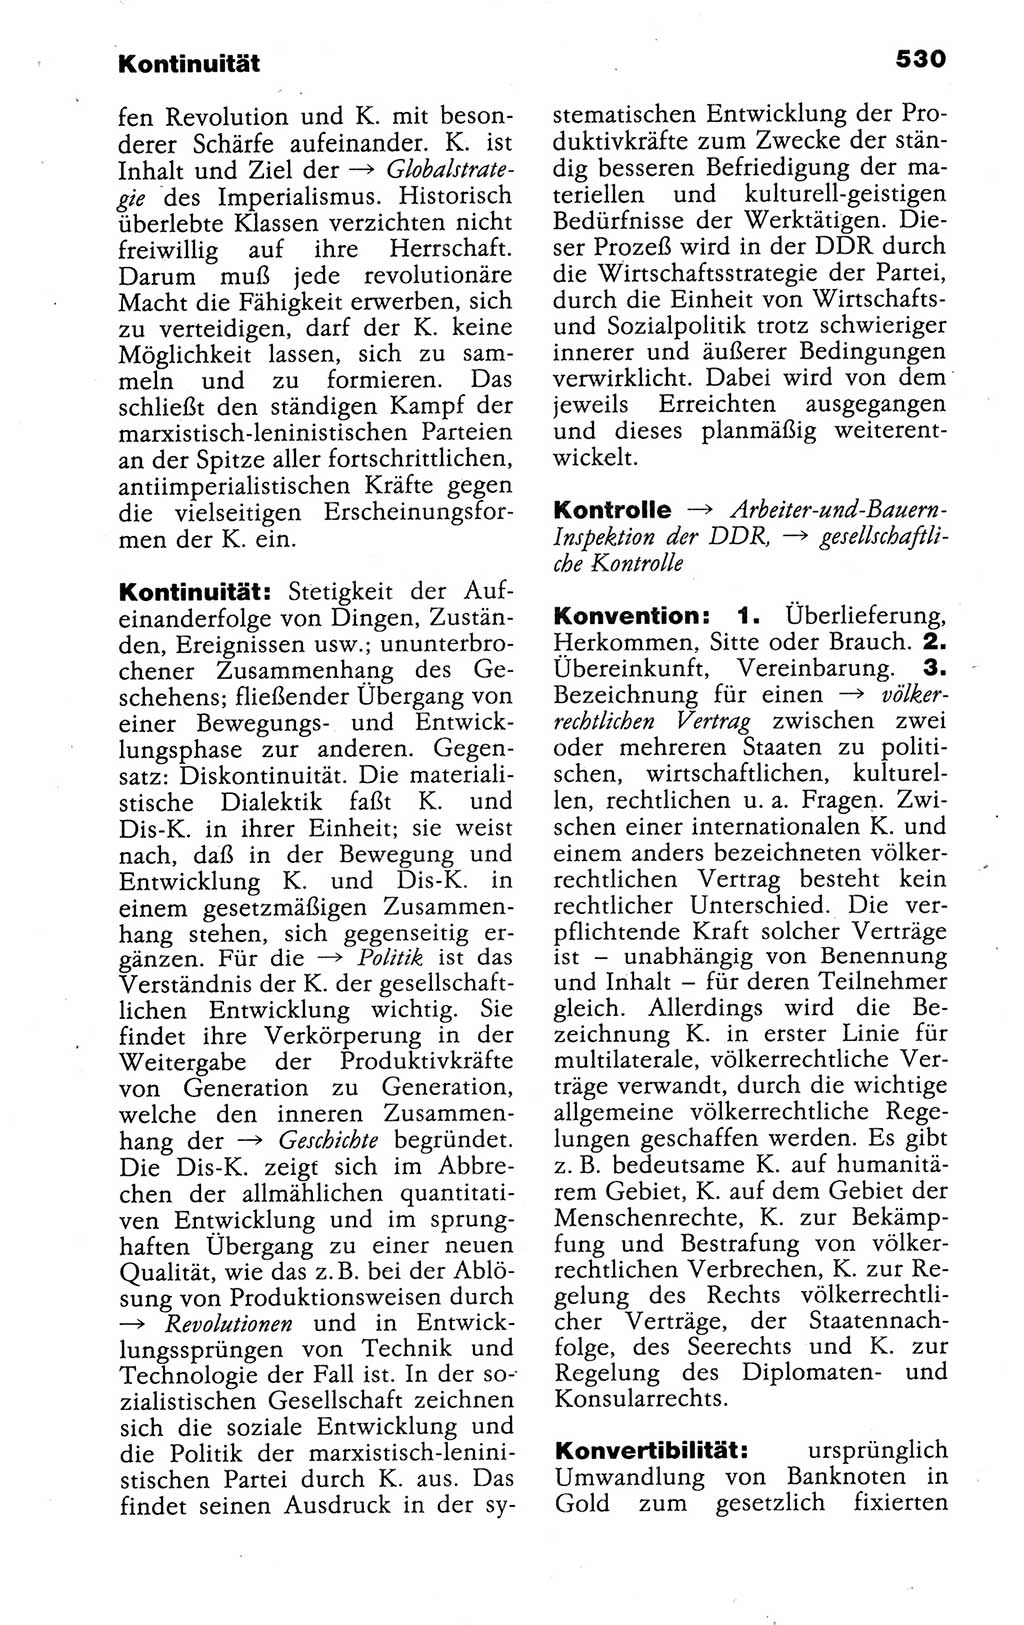 Kleines politisches Wörterbuch [Deutsche Demokratische Republik (DDR)] 1988, Seite 530 (Kl. pol. Wb. DDR 1988, S. 530)